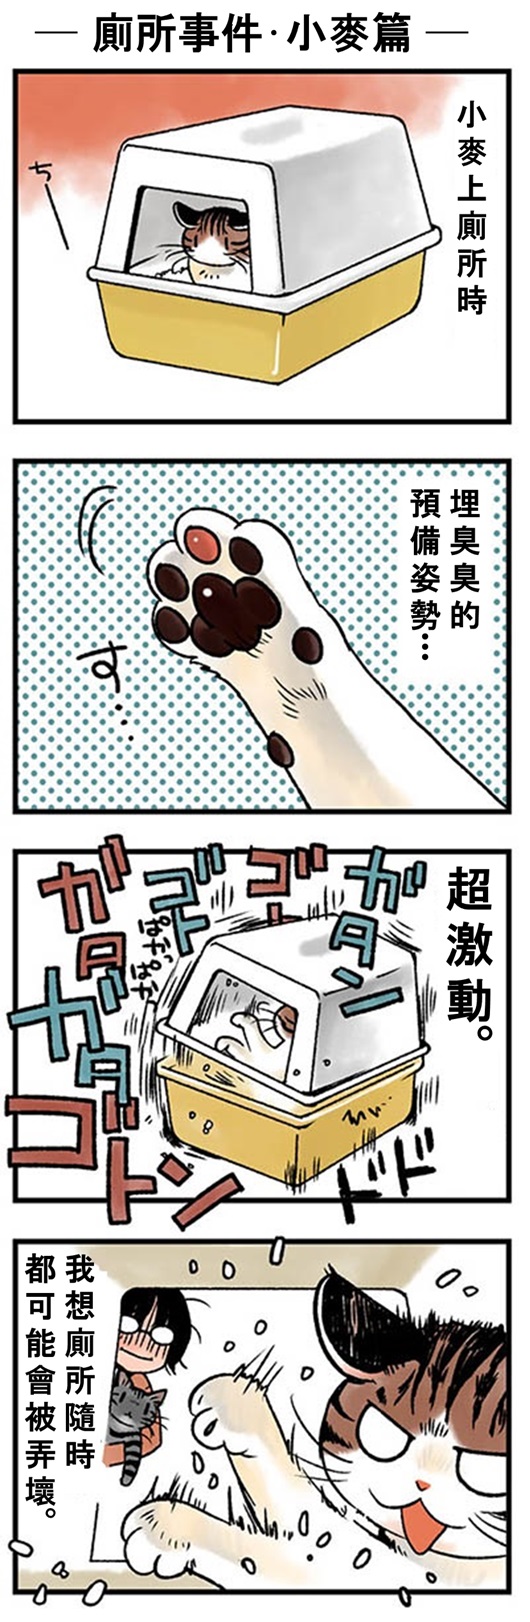 ★山野りんりん猫まみれ漫画★41話-1.jpg